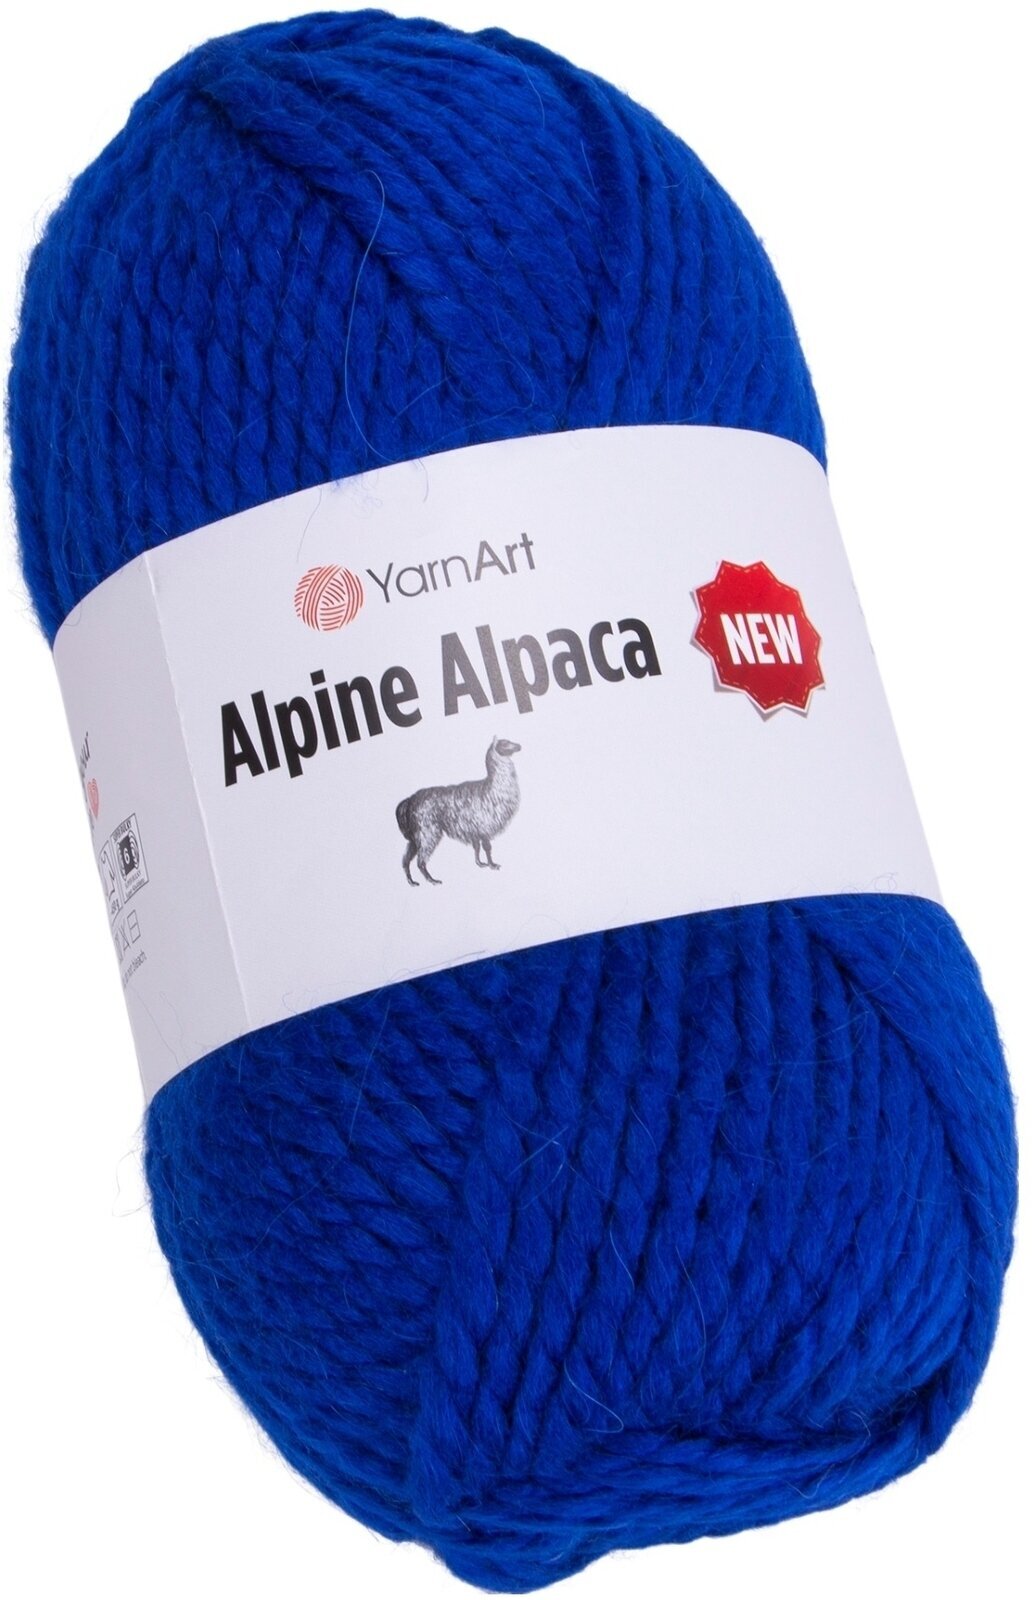 Νήμα Πλεξίματος Yarn Art Alpine Alpaca 1442